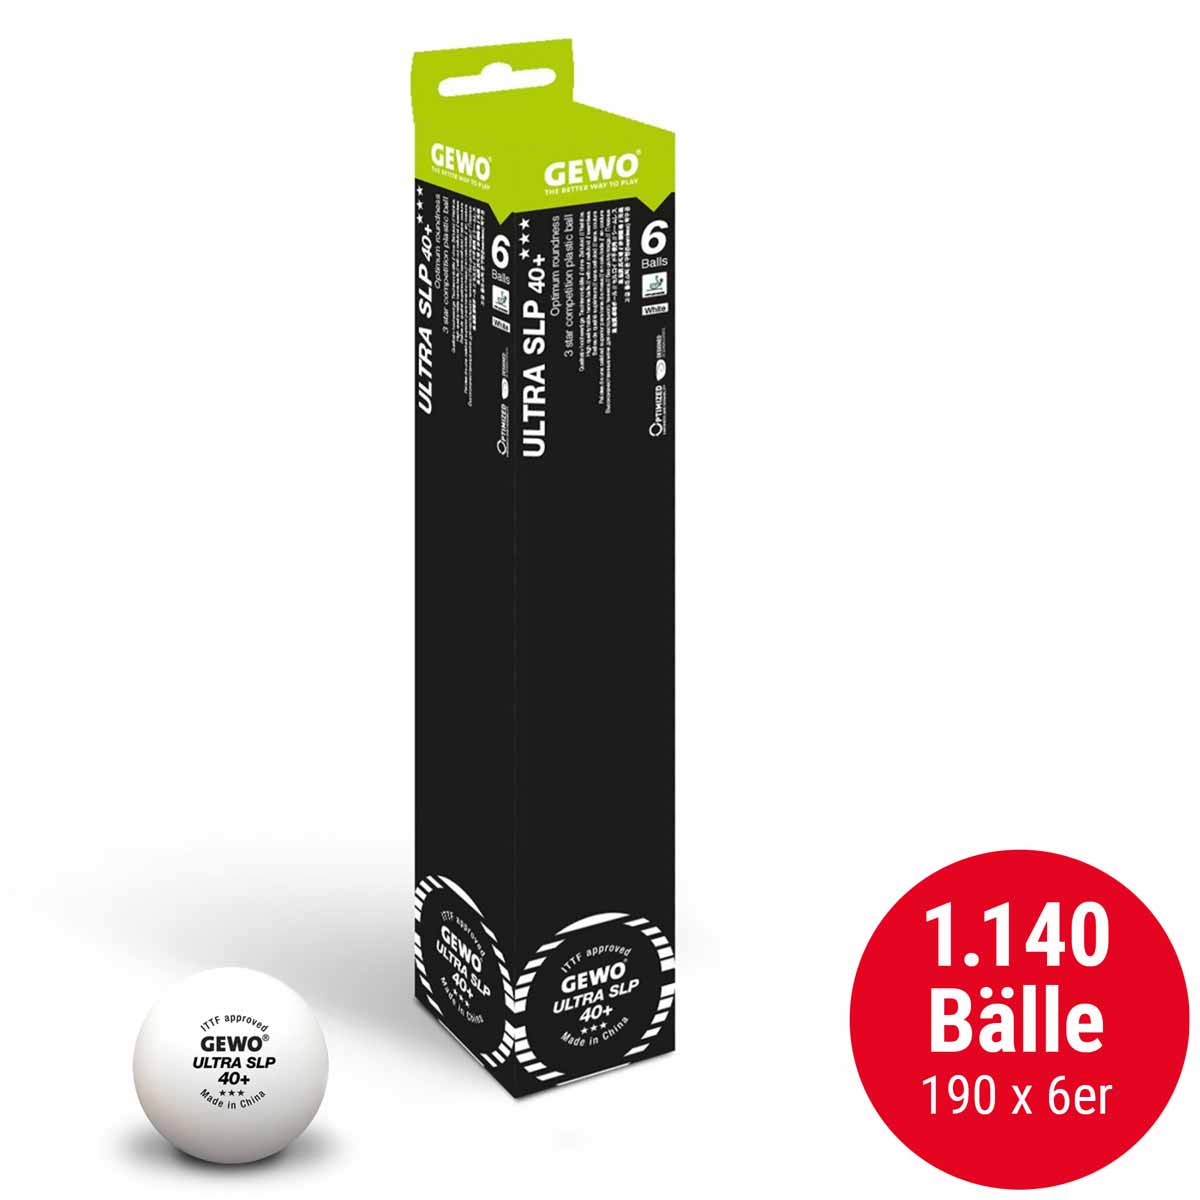 GEWO Ball Ultra SLP 40+ *** 190 x 6er weiß